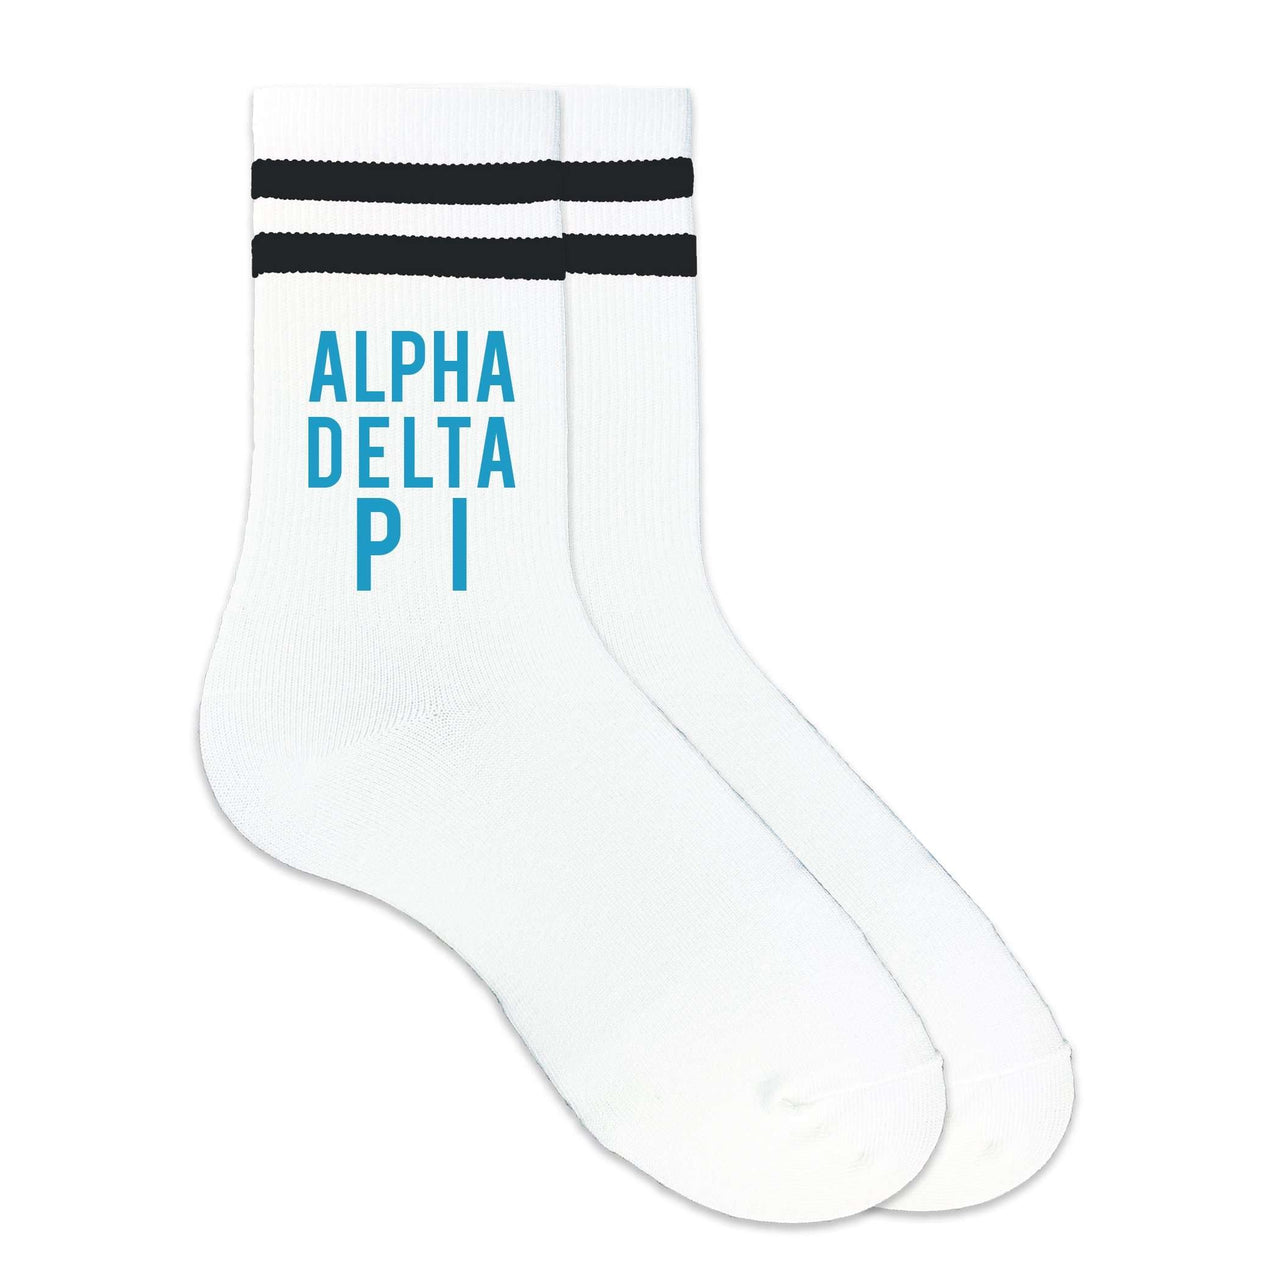 Alpha Delta Pi sorority name in sorority colors digitally printed on black striped crew socks.